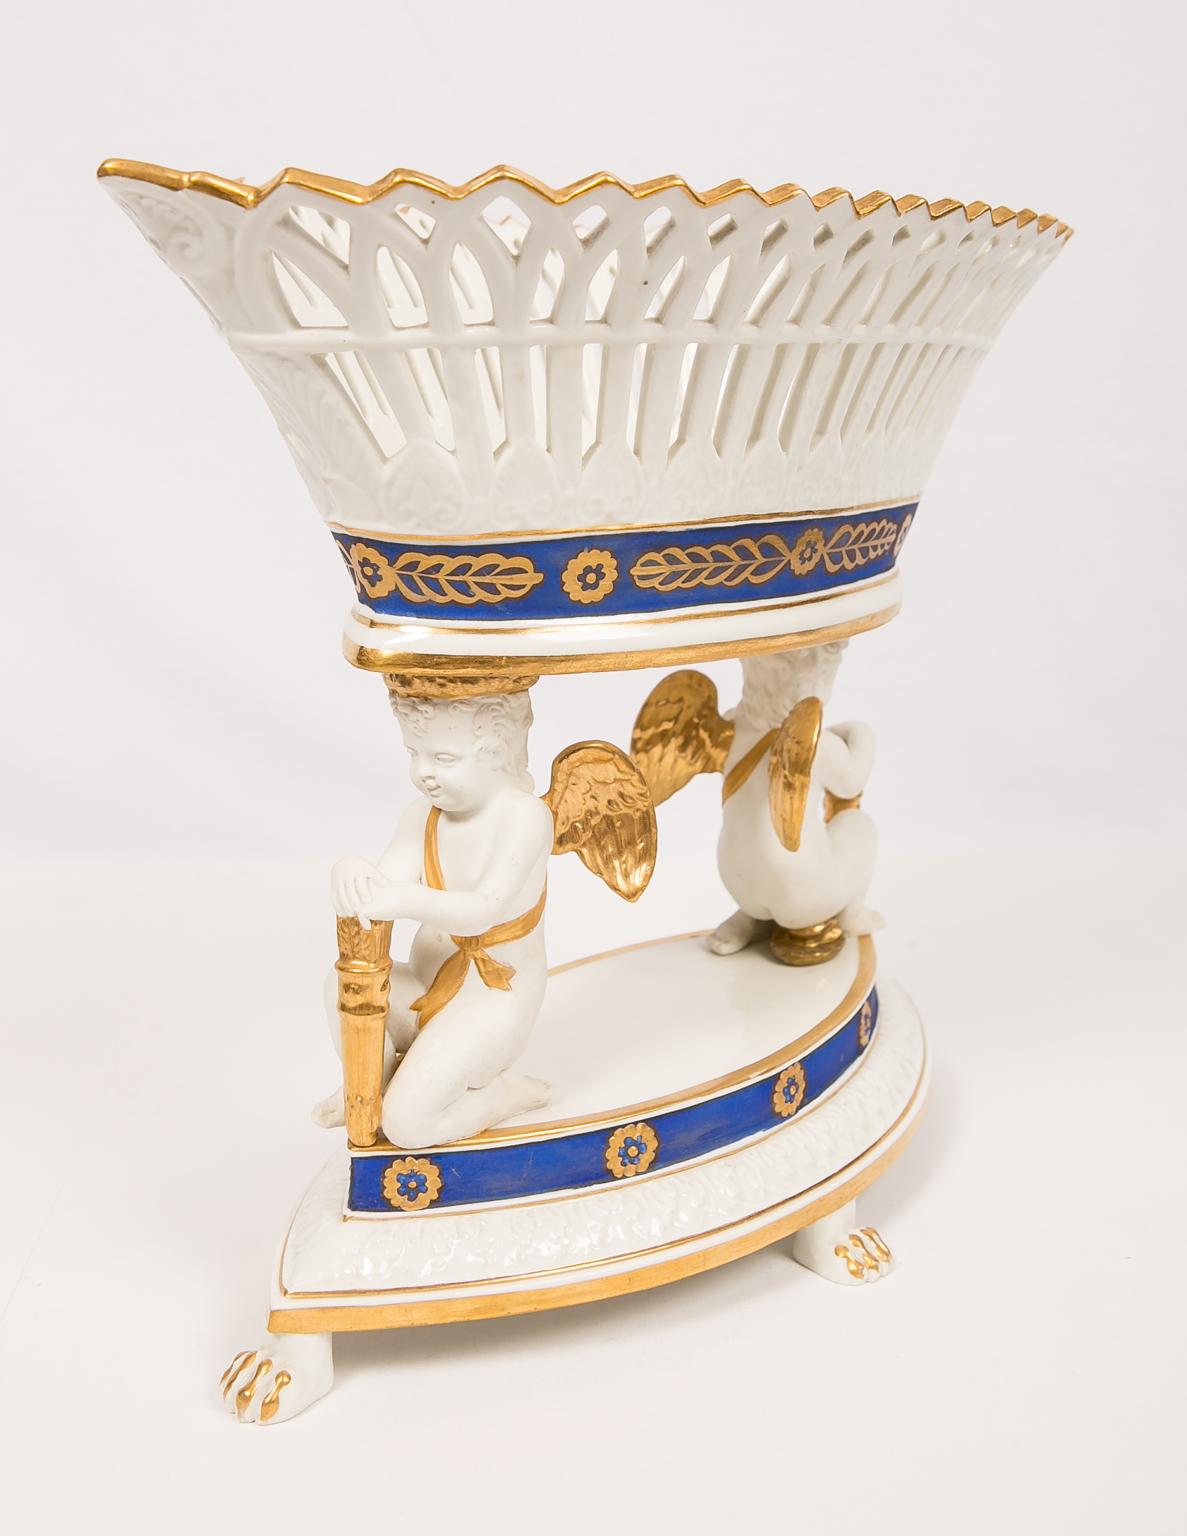 Wir freuen uns:: diesen großen französischen Porzellanaufsatz mit Engeln:: die einen durchbrochenen Korb tragen:: anbieten zu können. Der durchbrochene Korb hat eine ovale Form. Die Porzellanengel sind aus Biskuit gefertigt und stehen auf einem